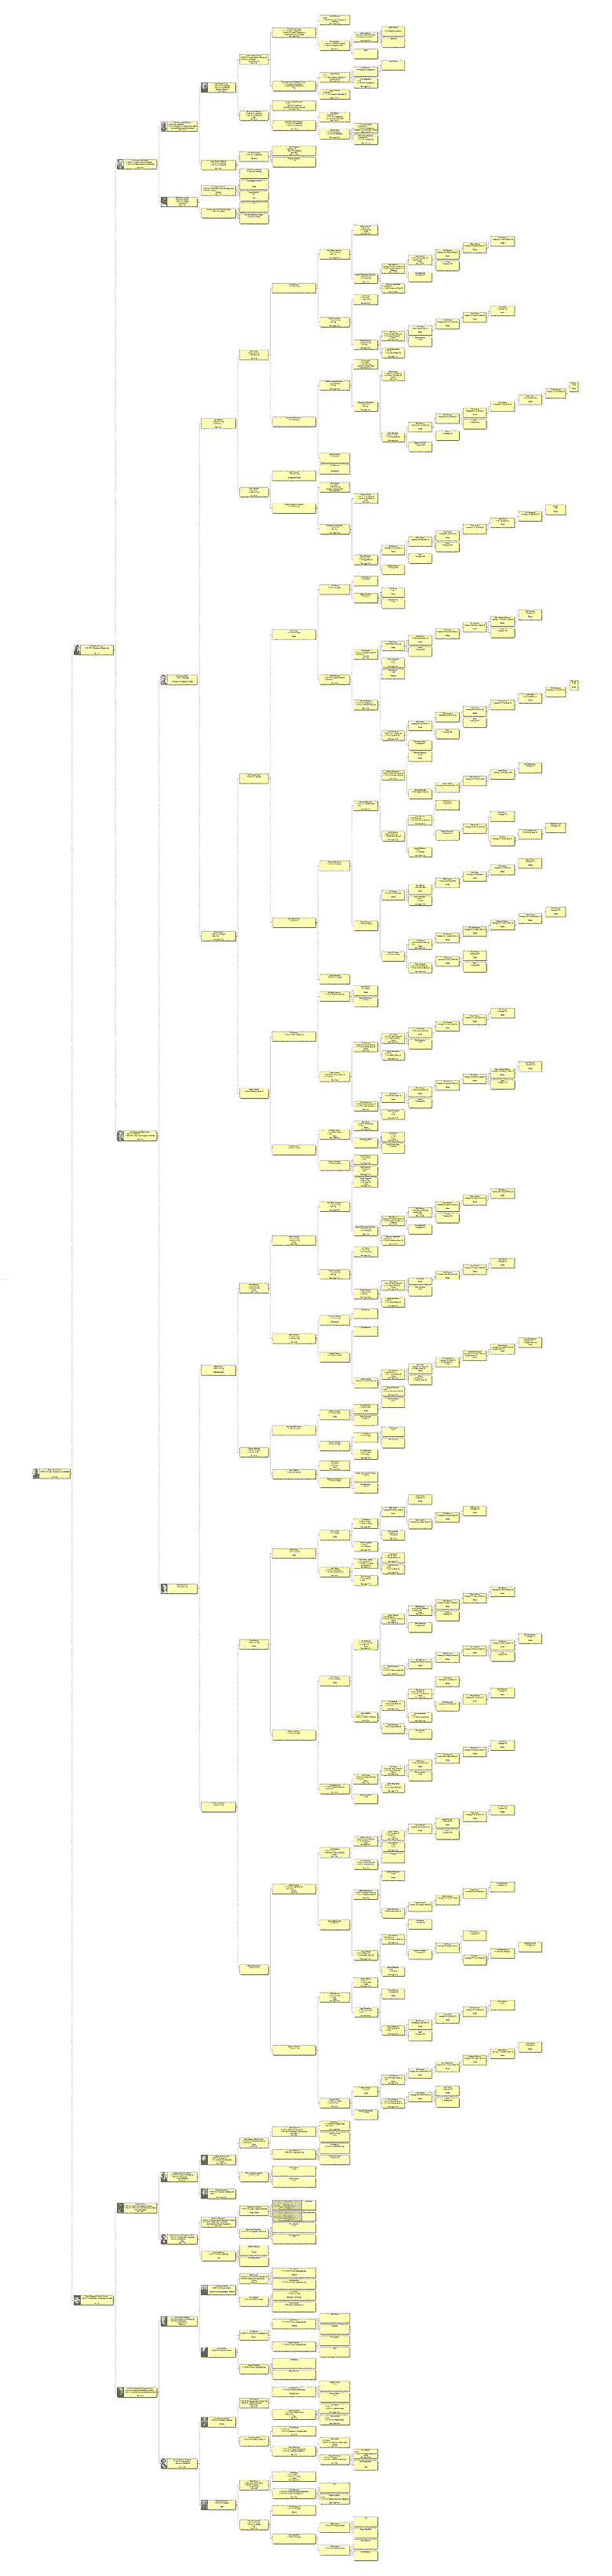 Nyman family tree